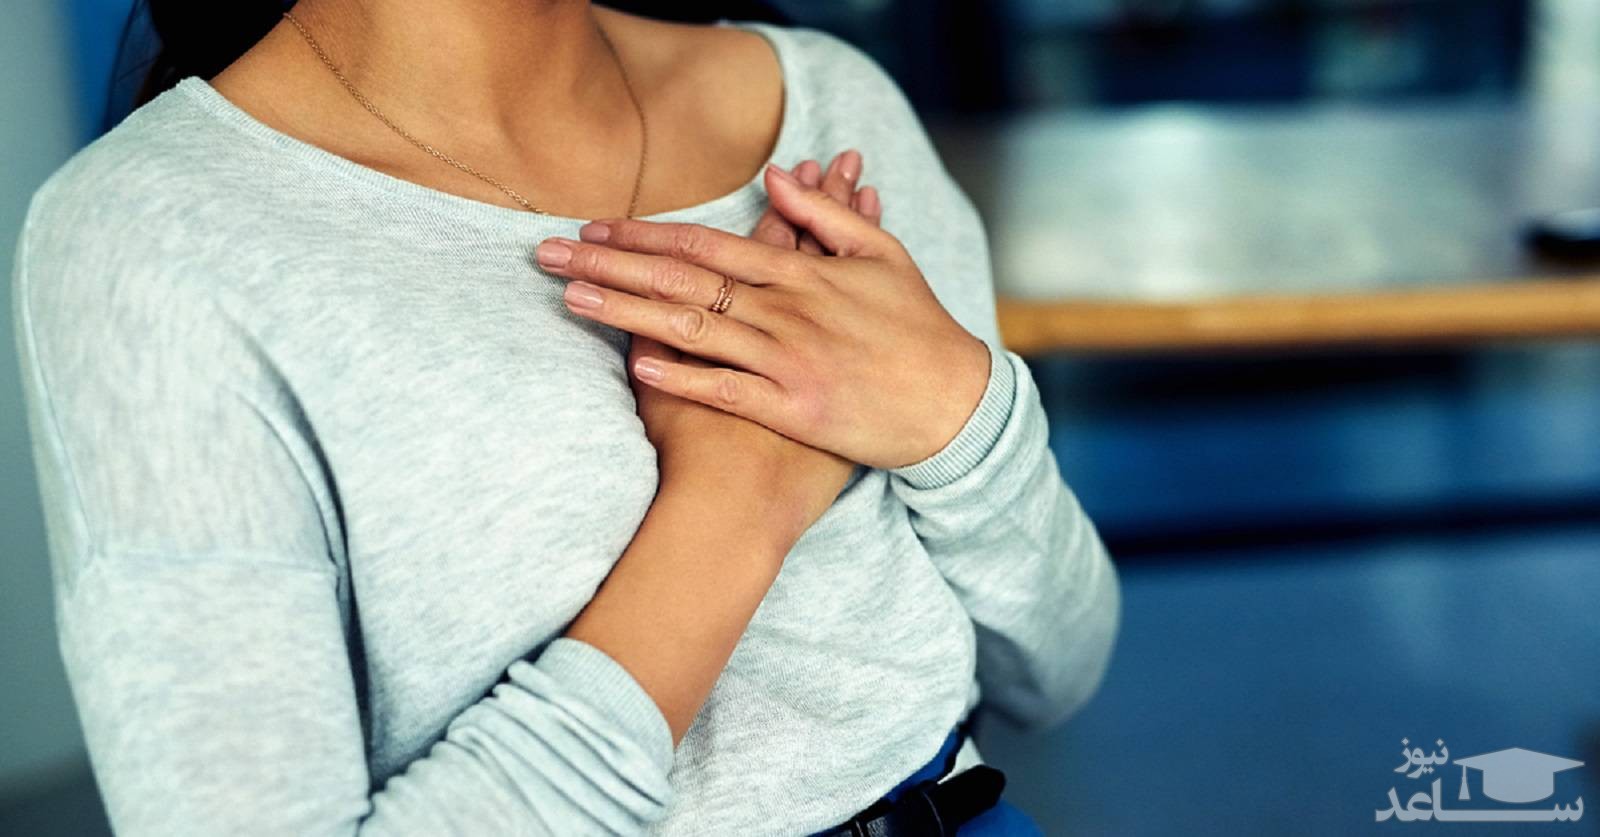 دلایل درد قفسه سینه در دوران بارداری و روش های درمان